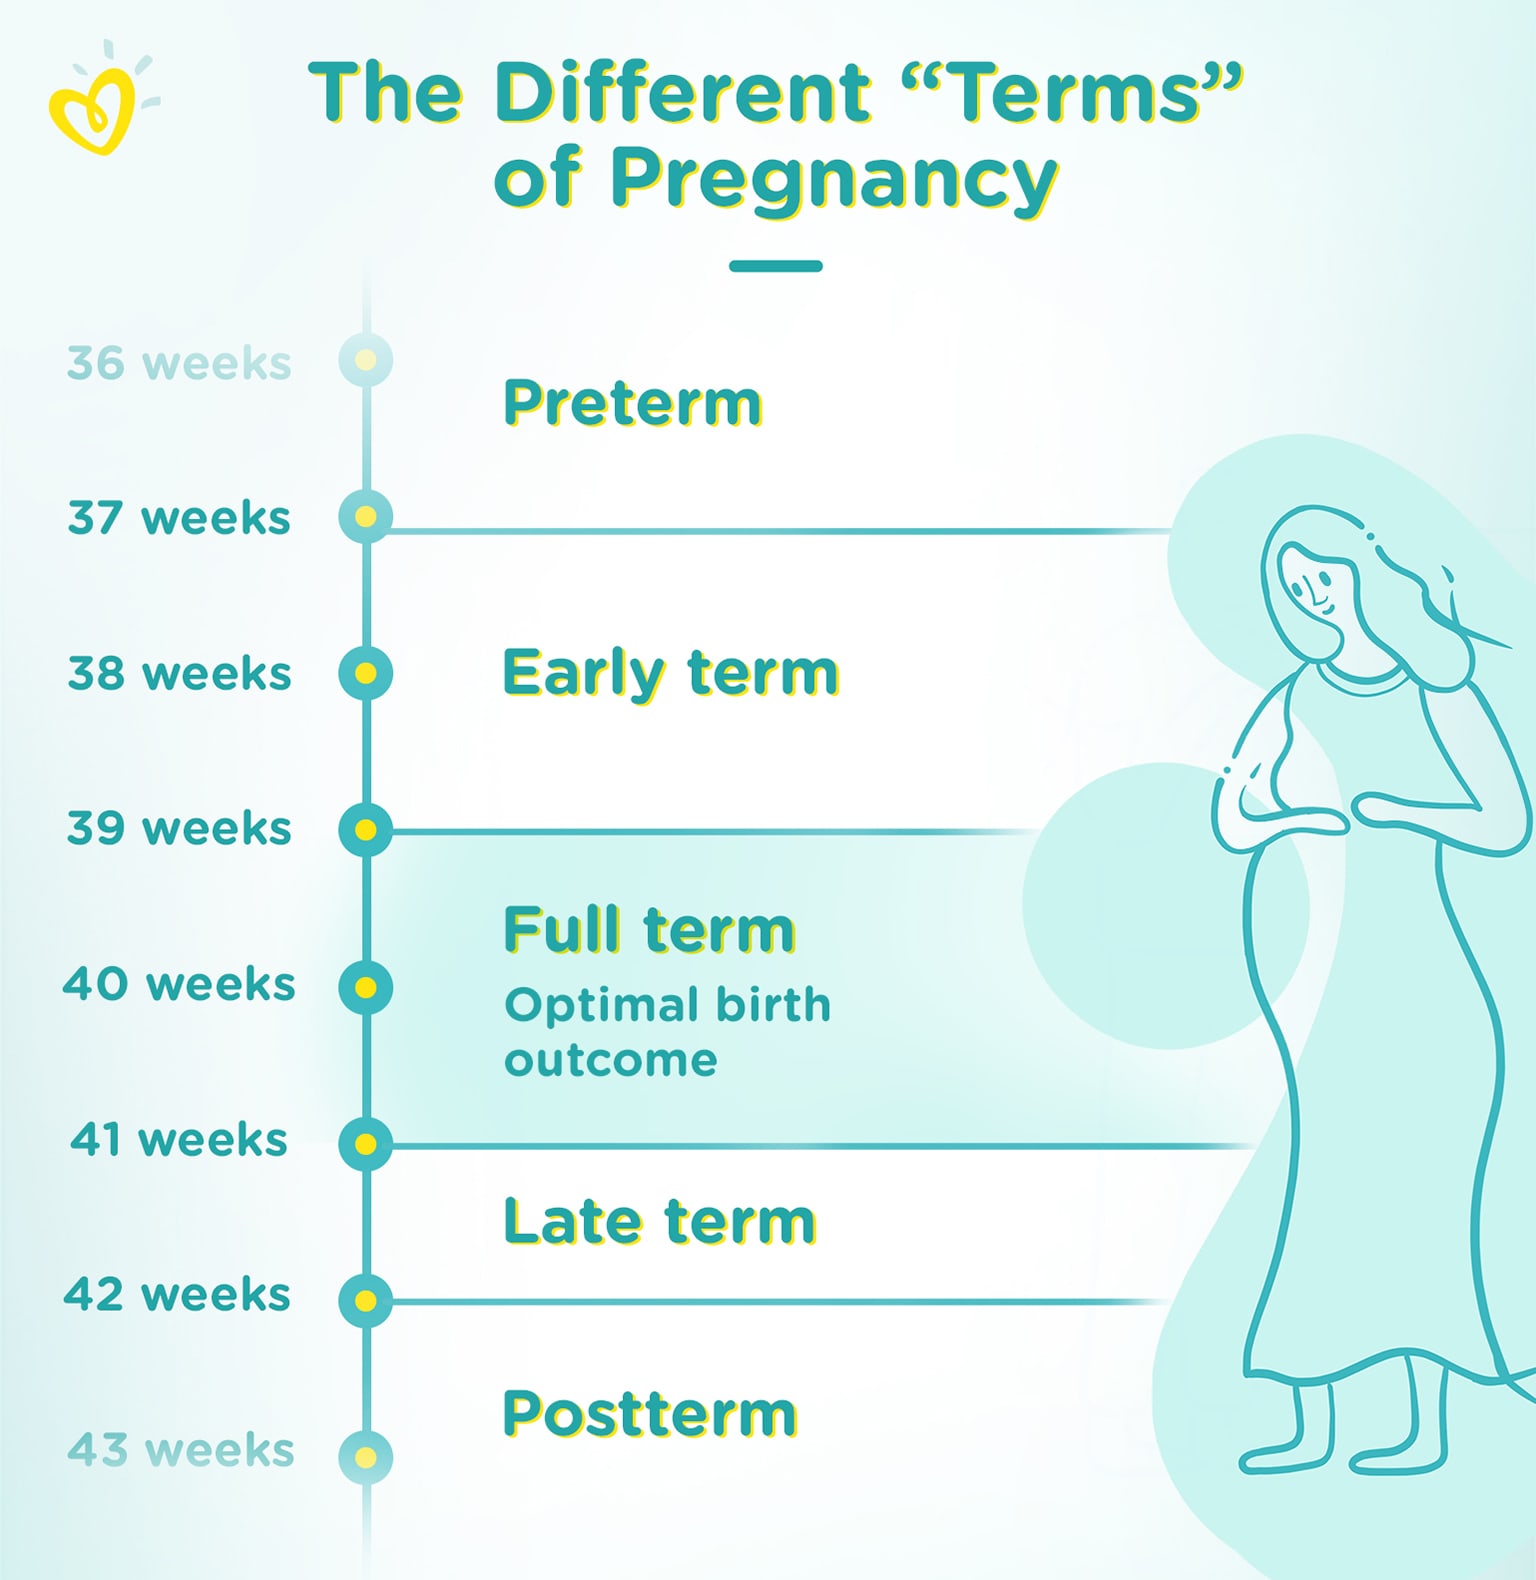 Termen van zwangerschap